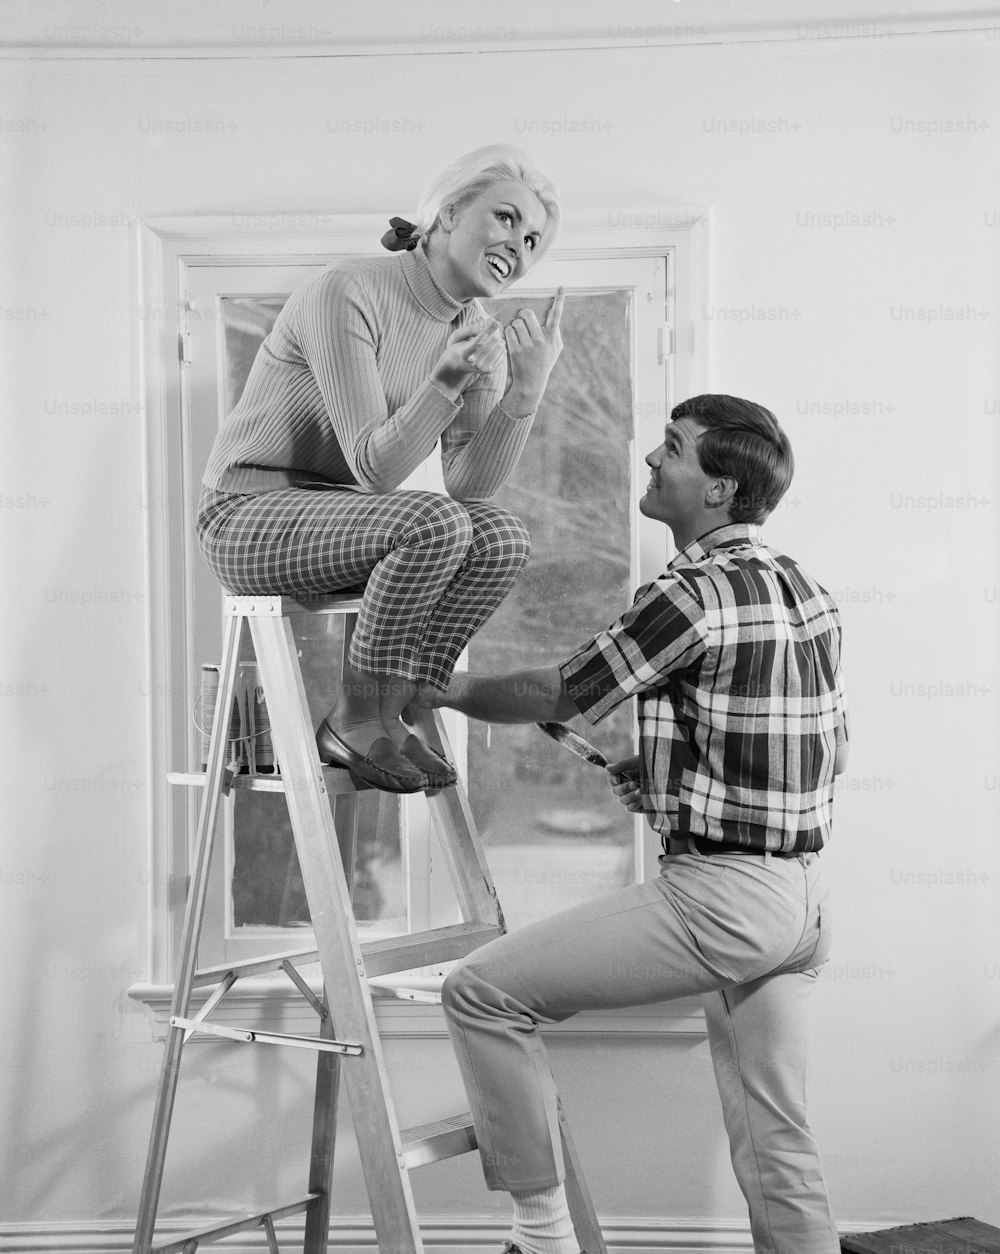 Un hombre parado en una escalera junto a una mujer